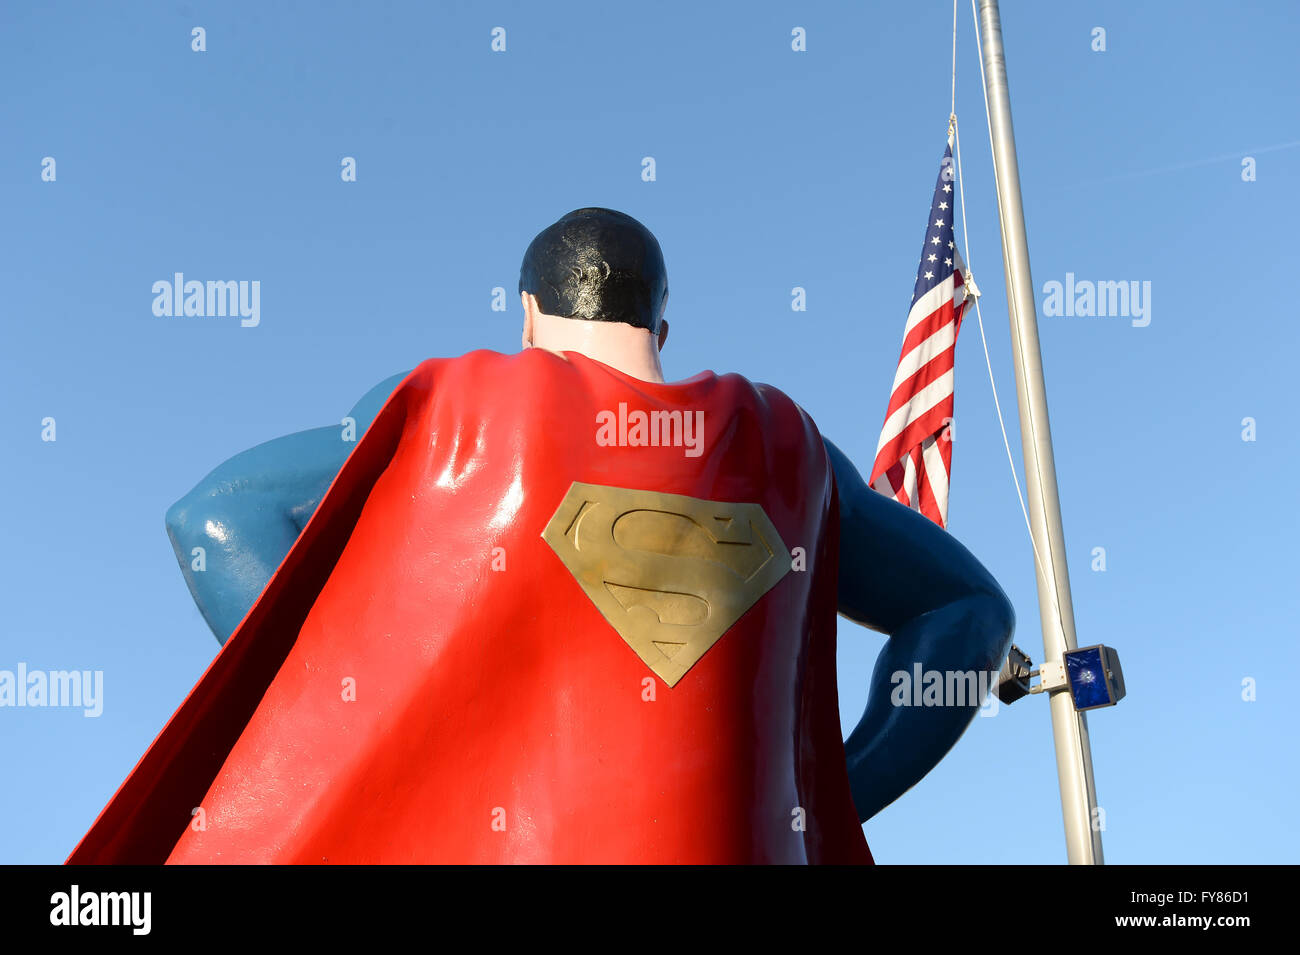 Metropolis, IL, USA - Le 25 mars 2016 : statue de Superman à l'extérieur du Musée et ville natale à Metropolis, Illinois Banque D'Images